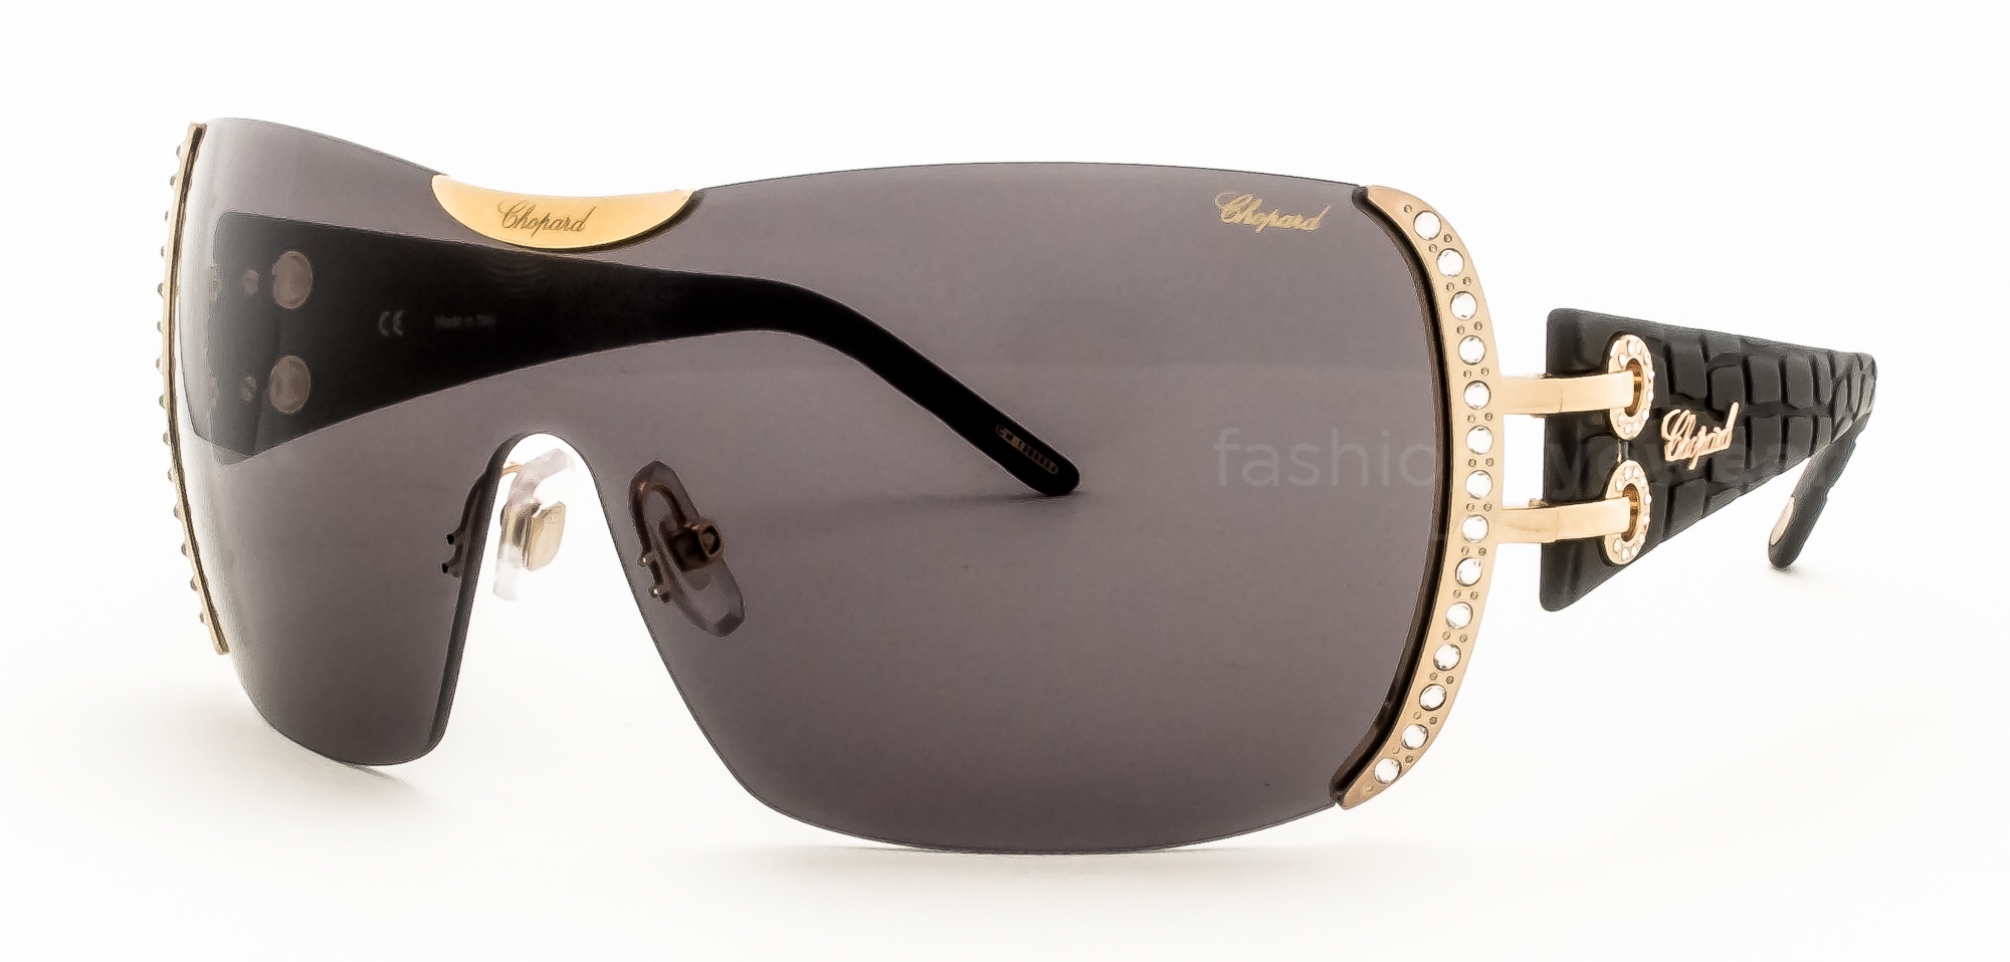 Chopard 935 Sunglasses